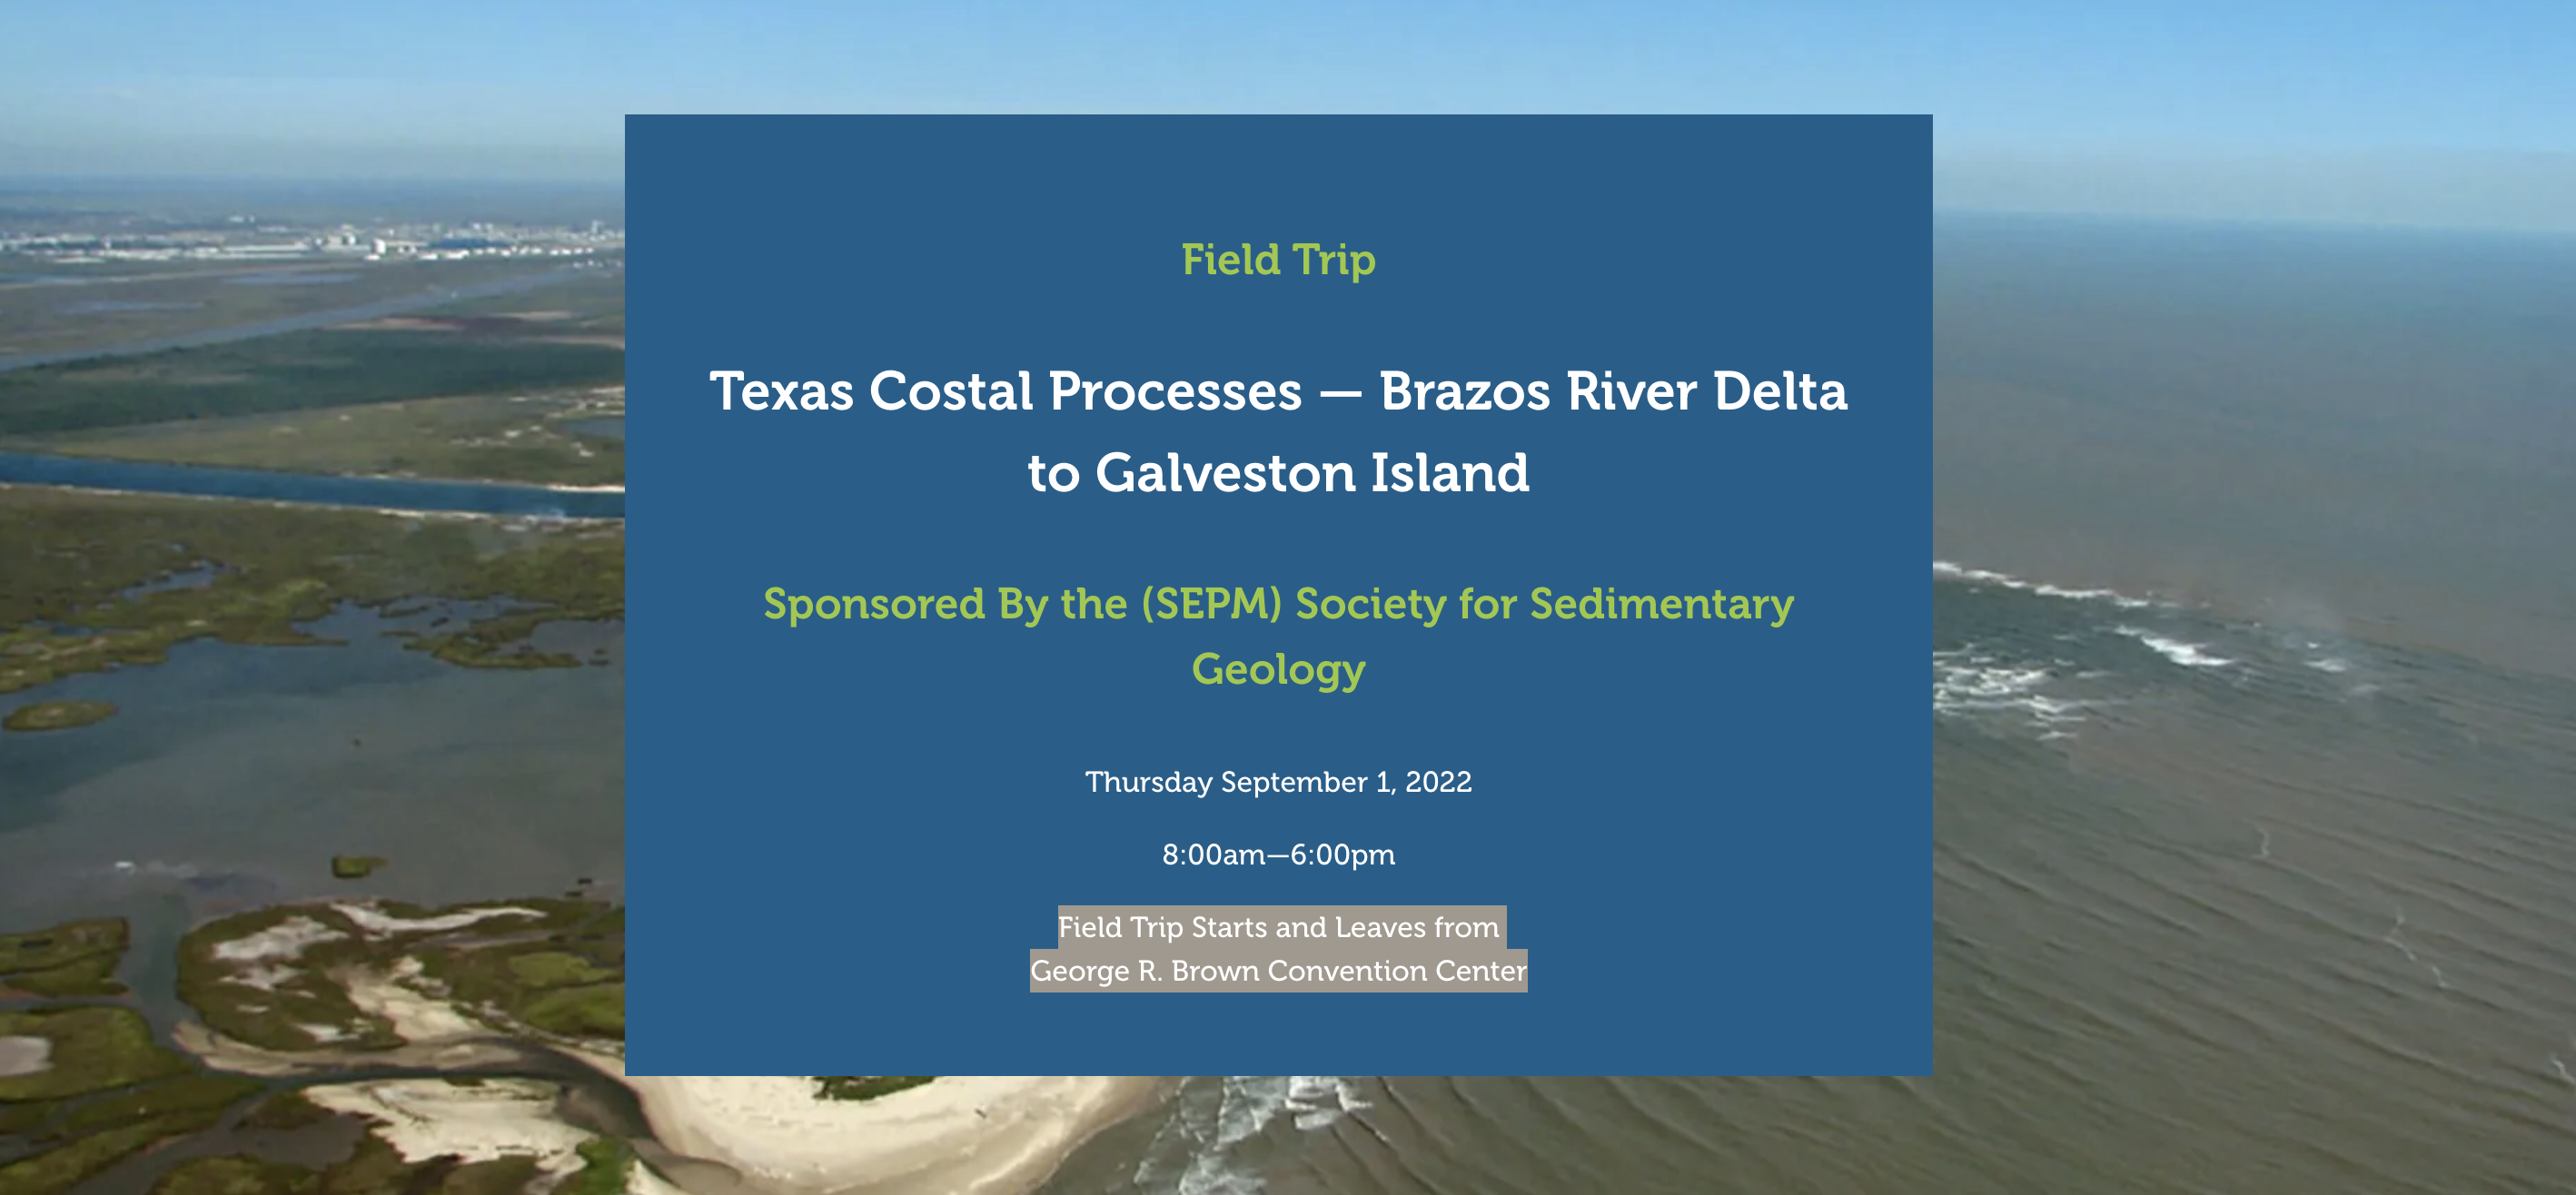 IMAGE 2022 Field Trip: Texas Costal Processes — Brazos River Delta to Galveston Island